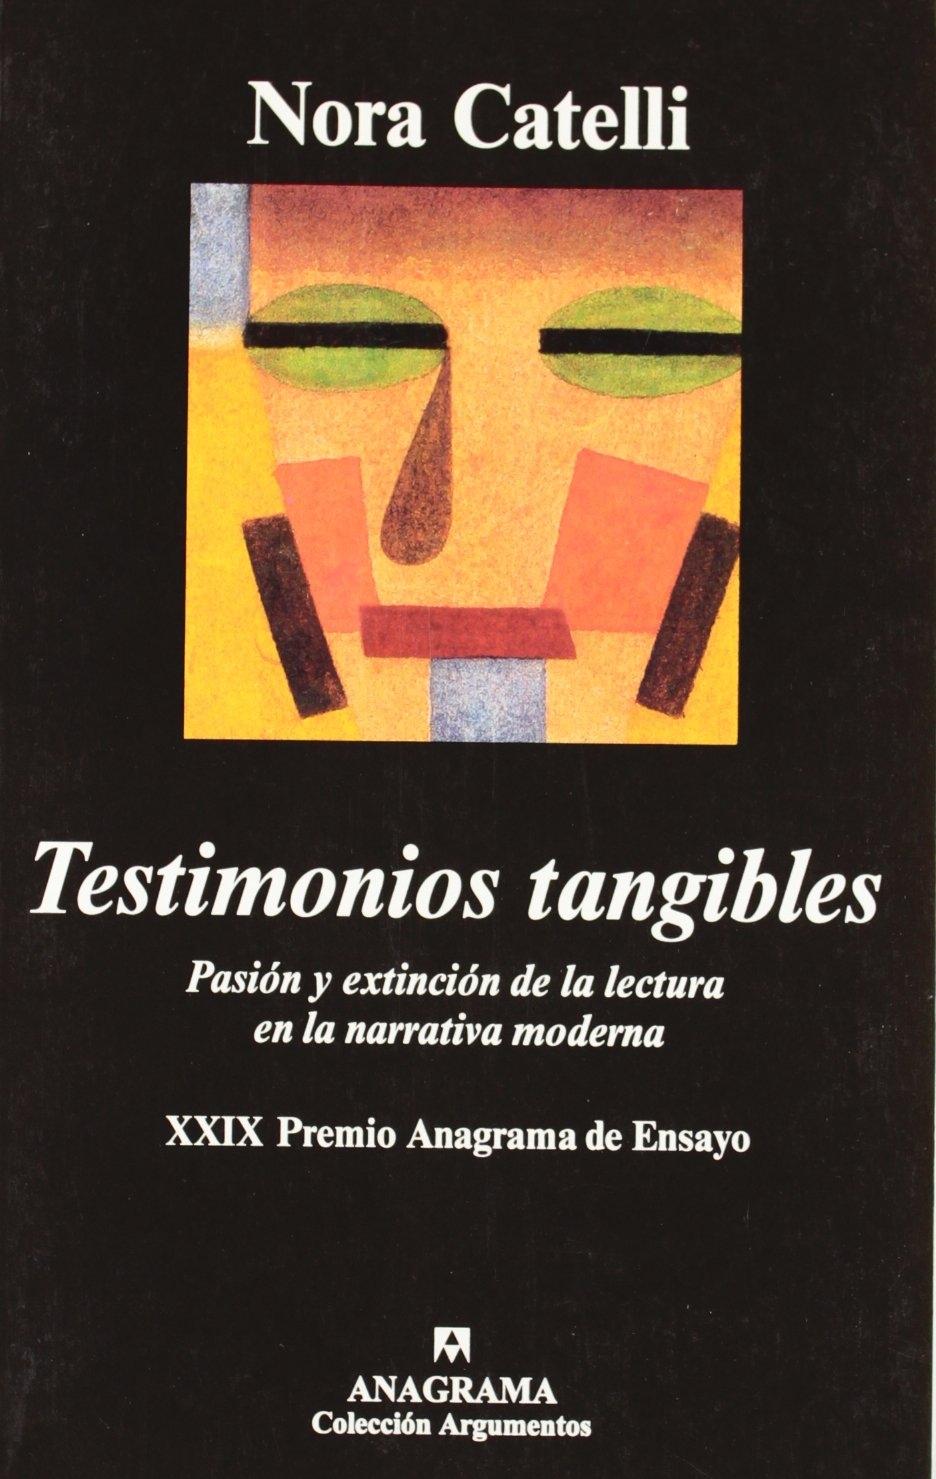 TESTIMONIOS TANGIBLES "PASION Y EXTINCION DE LA LECTURA EN LA NARRATIVA MODERNA"